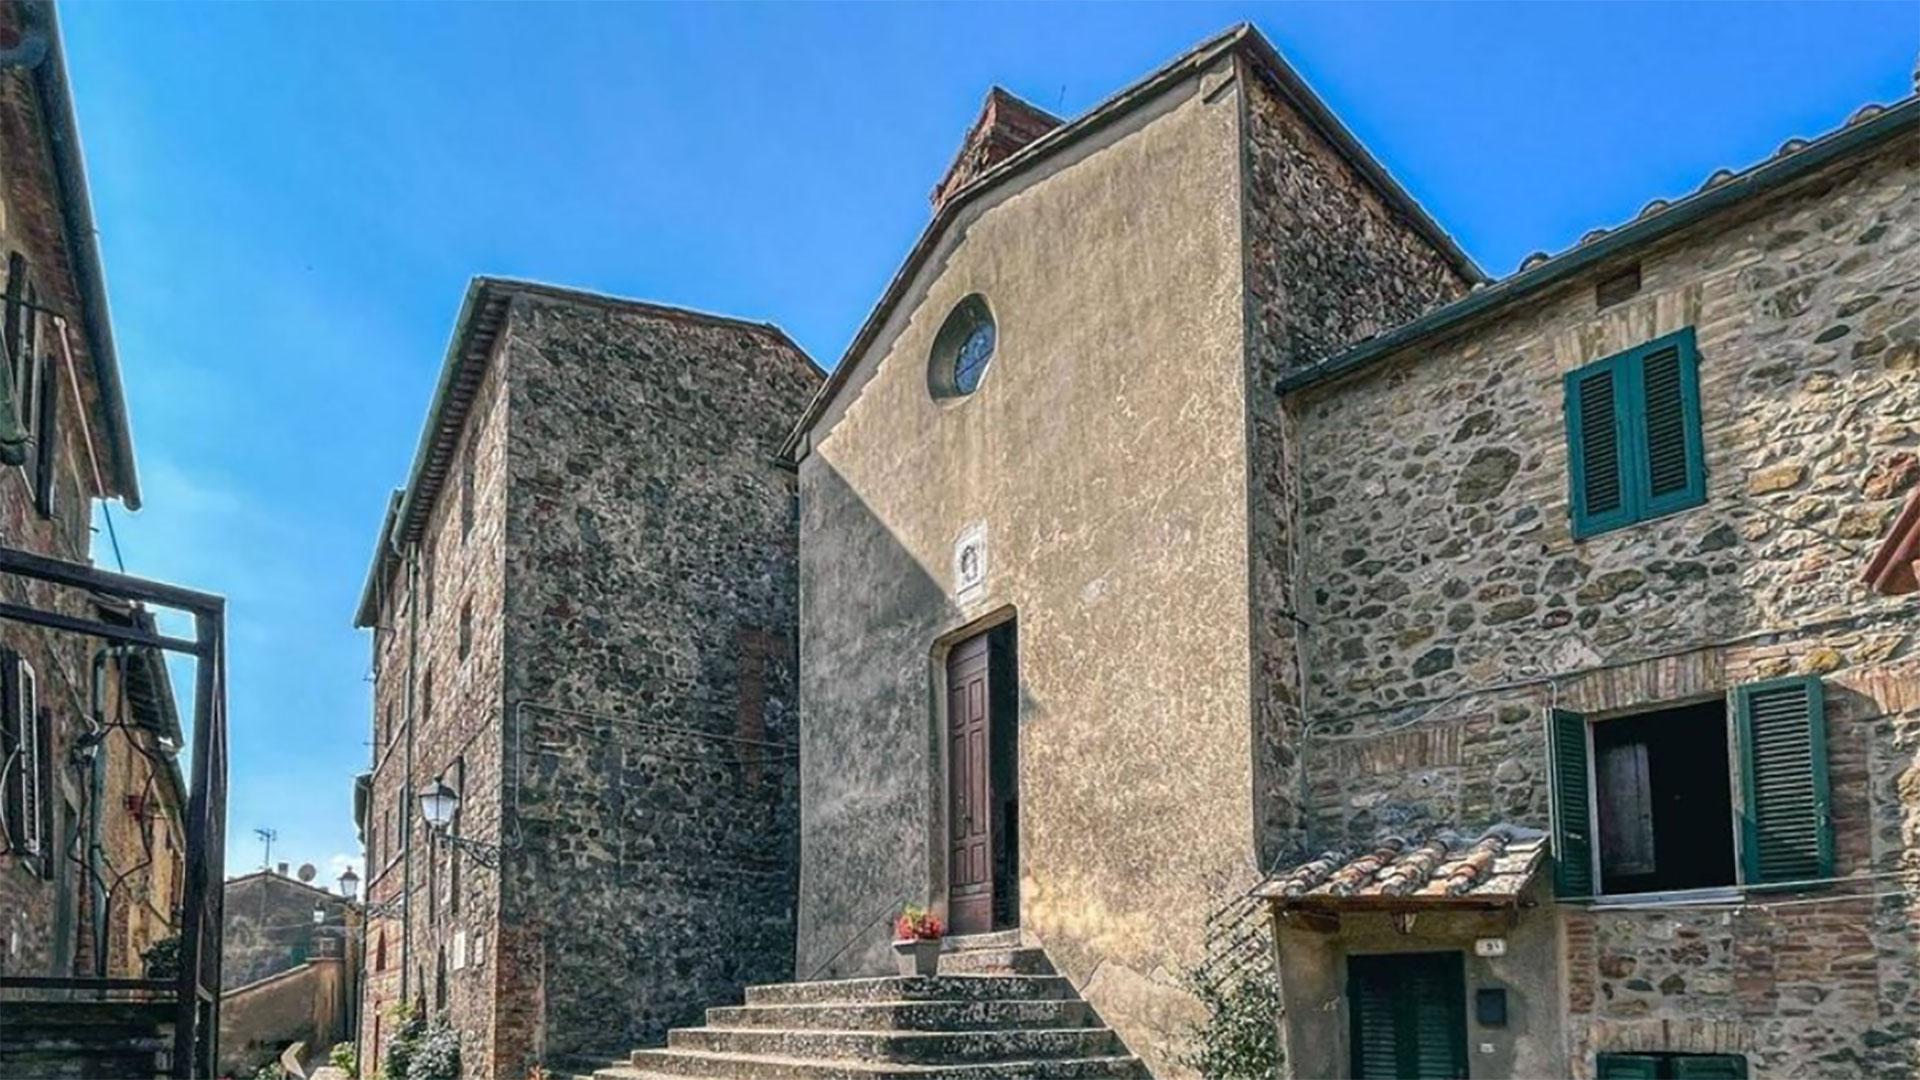 dit prachtige vakantiehuis in italië kost maar 29.000 euro